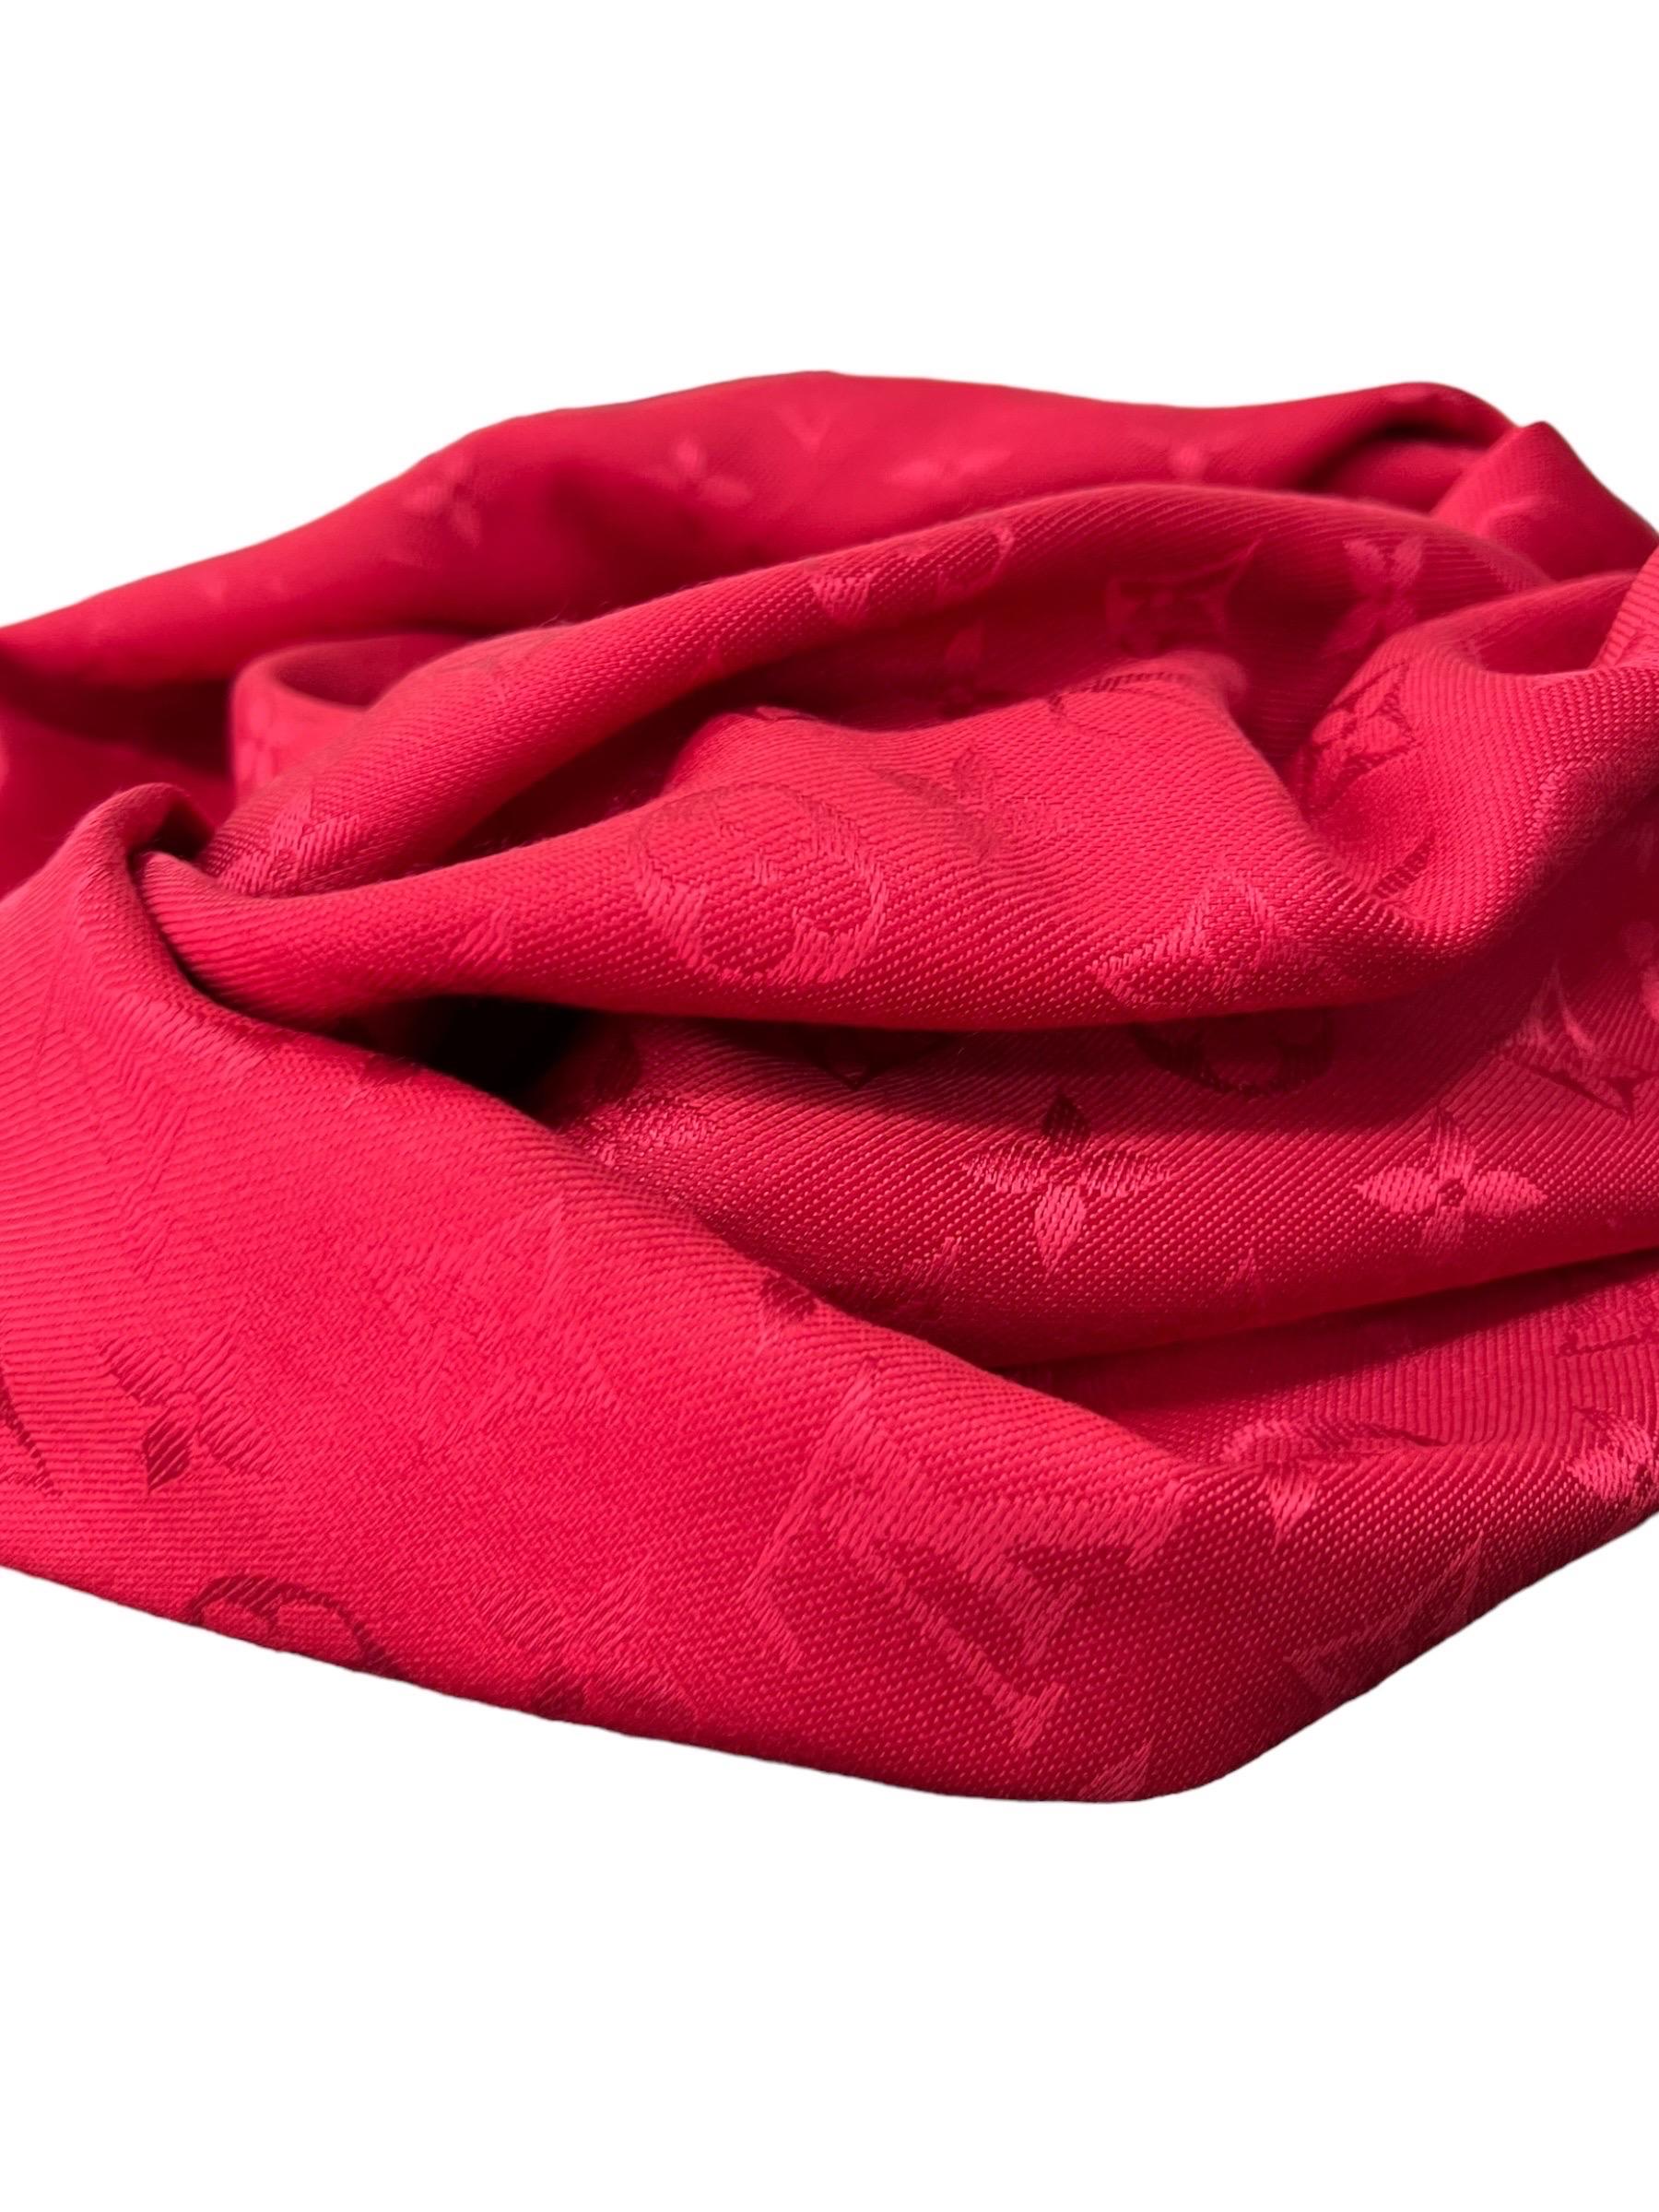 Scialle firmato Louis Vuitton, realizzato in seta e lana nella classica fantasia monogram rosso. Es ist mit einem breiten Rand in der Mitte, einer quadratischen Form und einer Größe von 143 cm Höhe und 143 cm Länge ausgestattet. Si presenta in